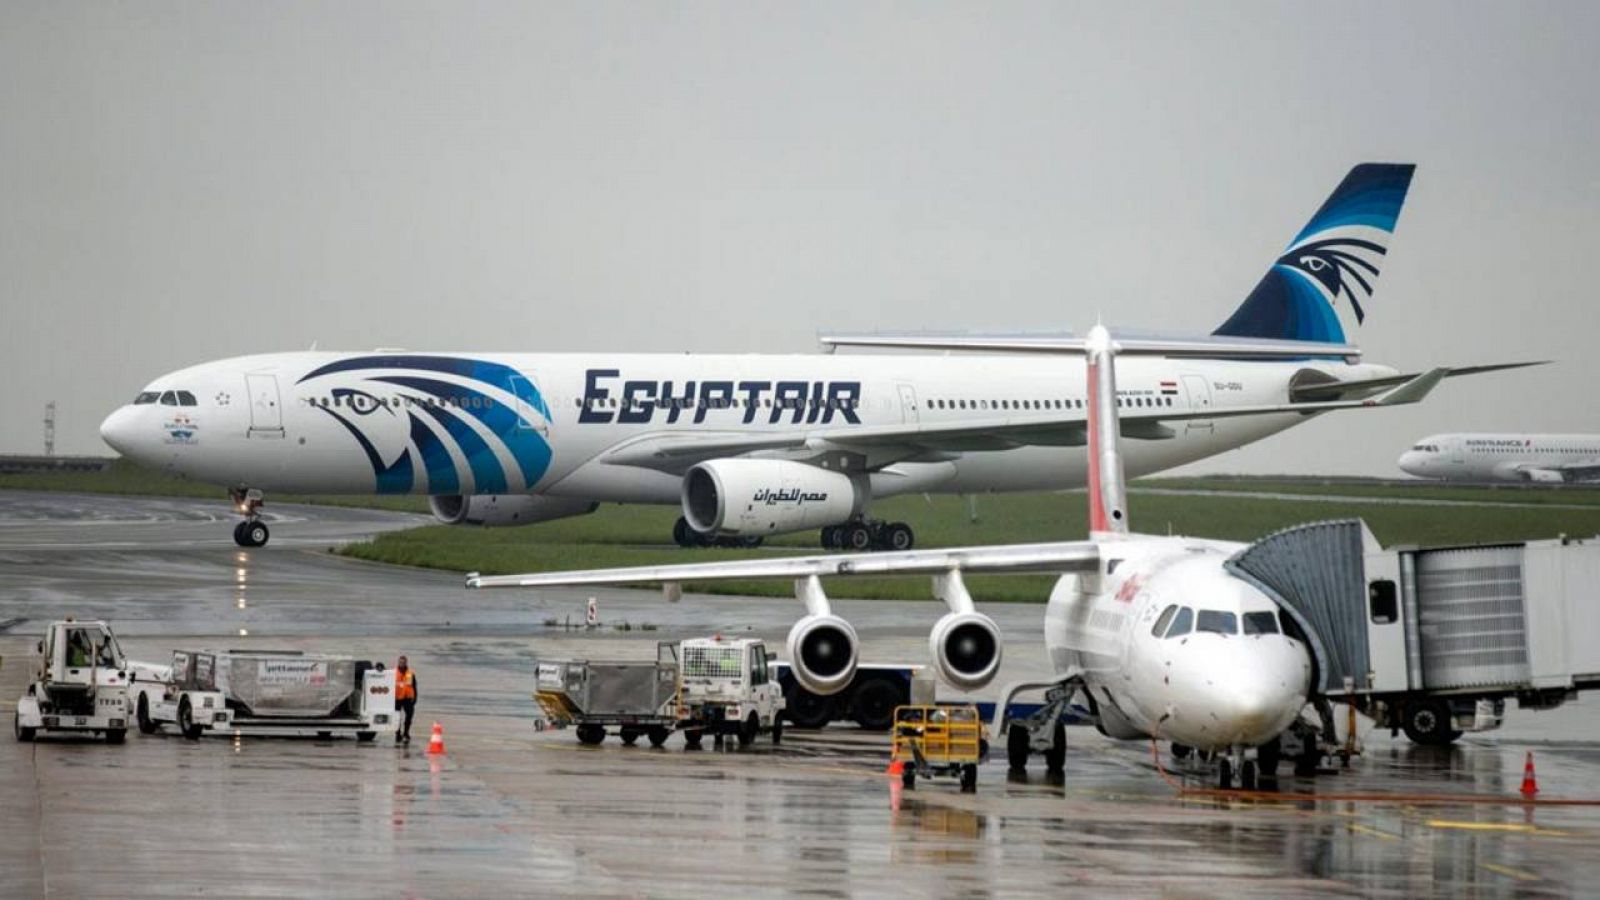 Imagen de archivo de un avión Airbus 330 de la compañía Egyptair